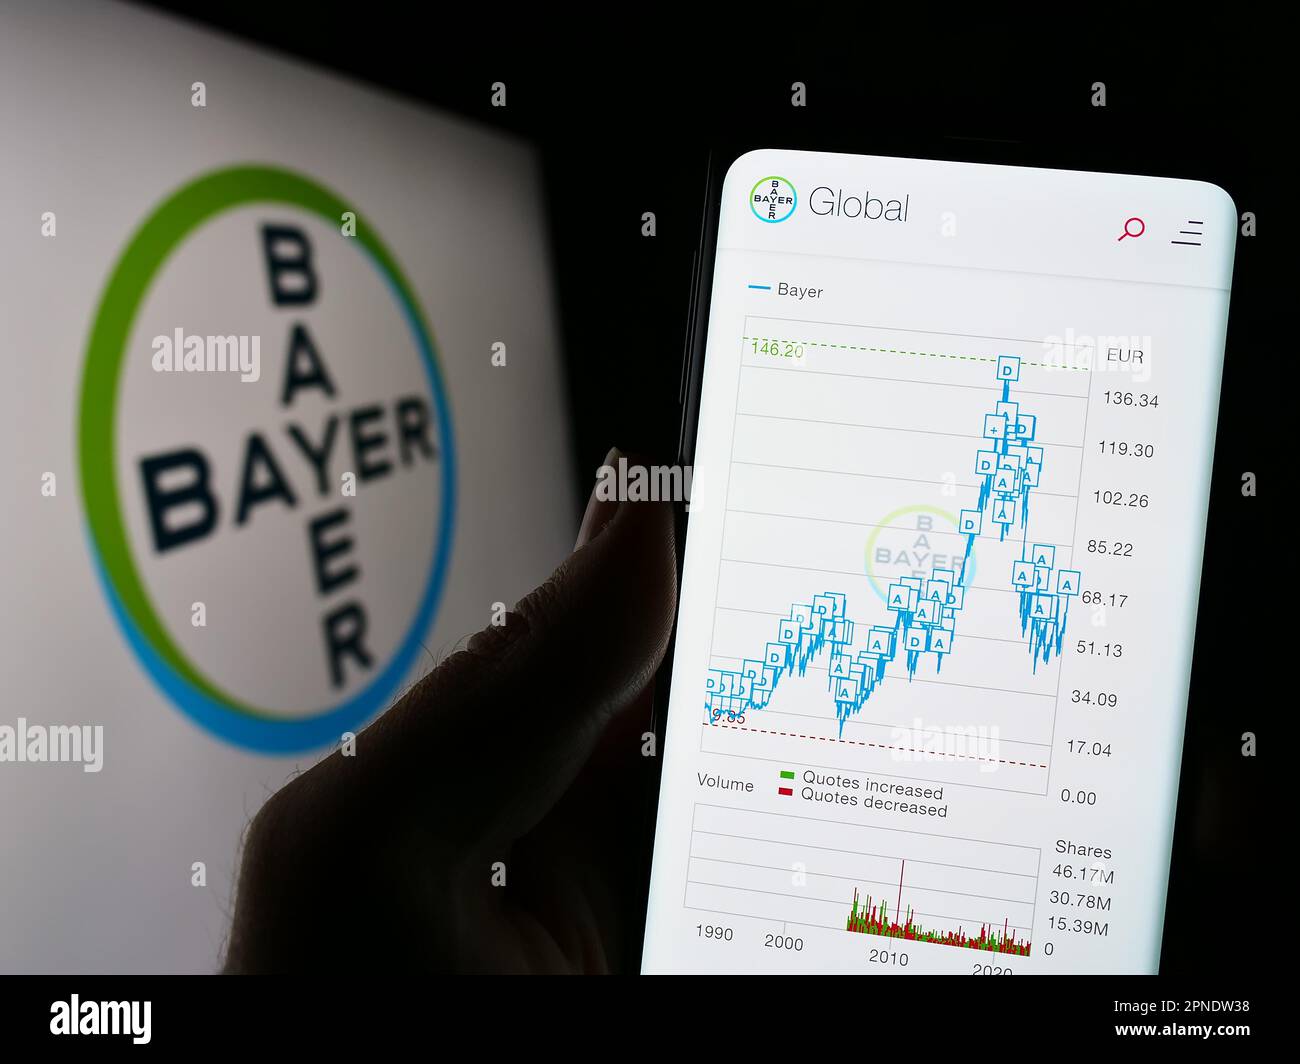 Personne tenant un téléphone portable avec le site Internet de la société pharmaceutique allemande Bayer AG à l'écran devant le logo. Concentrez-vous sur le centre de l'écran du téléphone. Banque D'Images